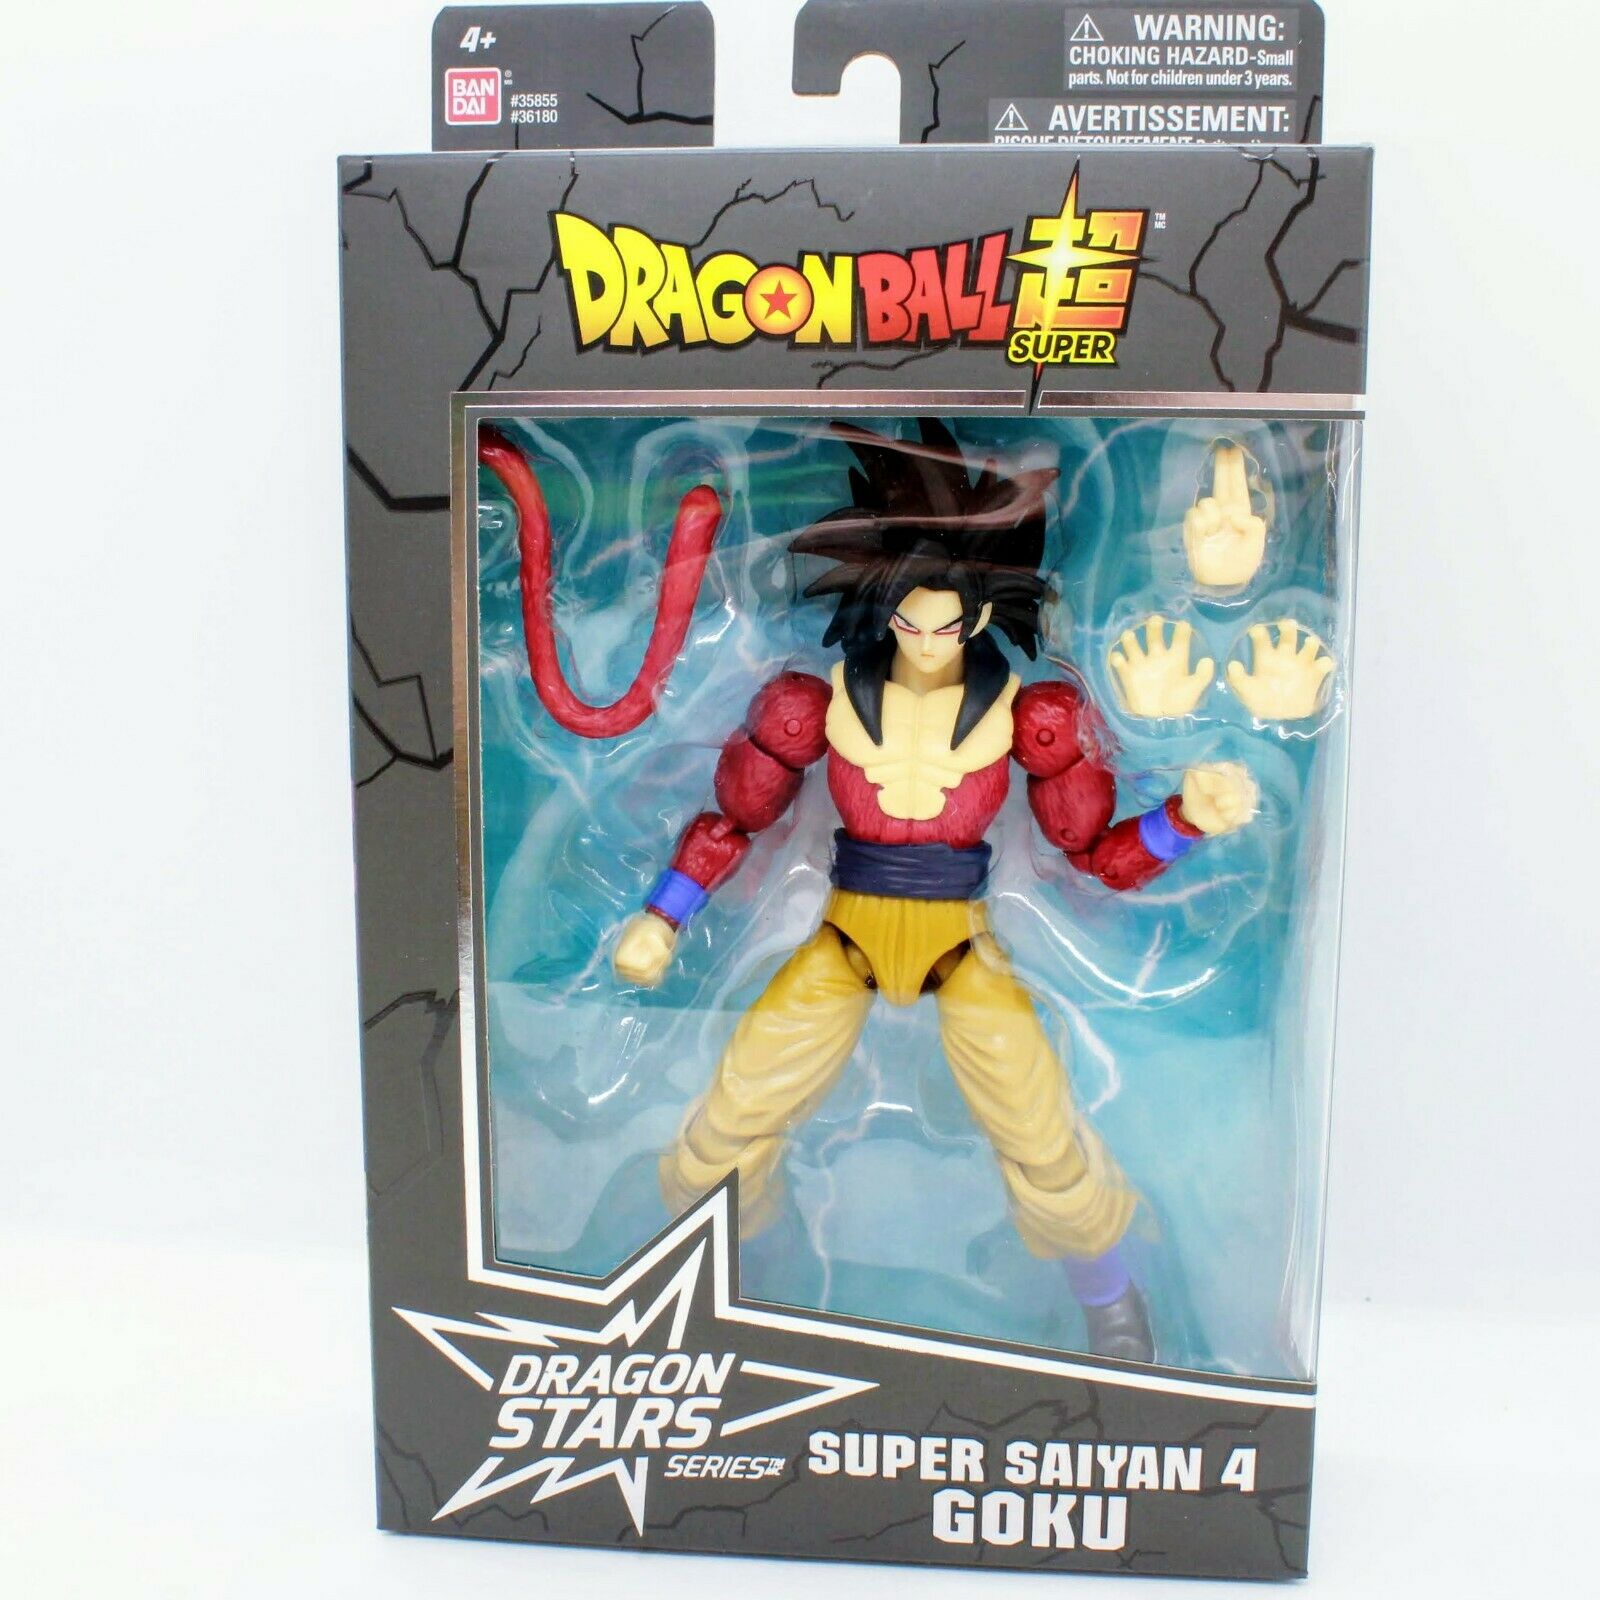 Dragon Ball Super - Dragon Stars - Super Saiyan 3 Goku, 6.5 Action Figure